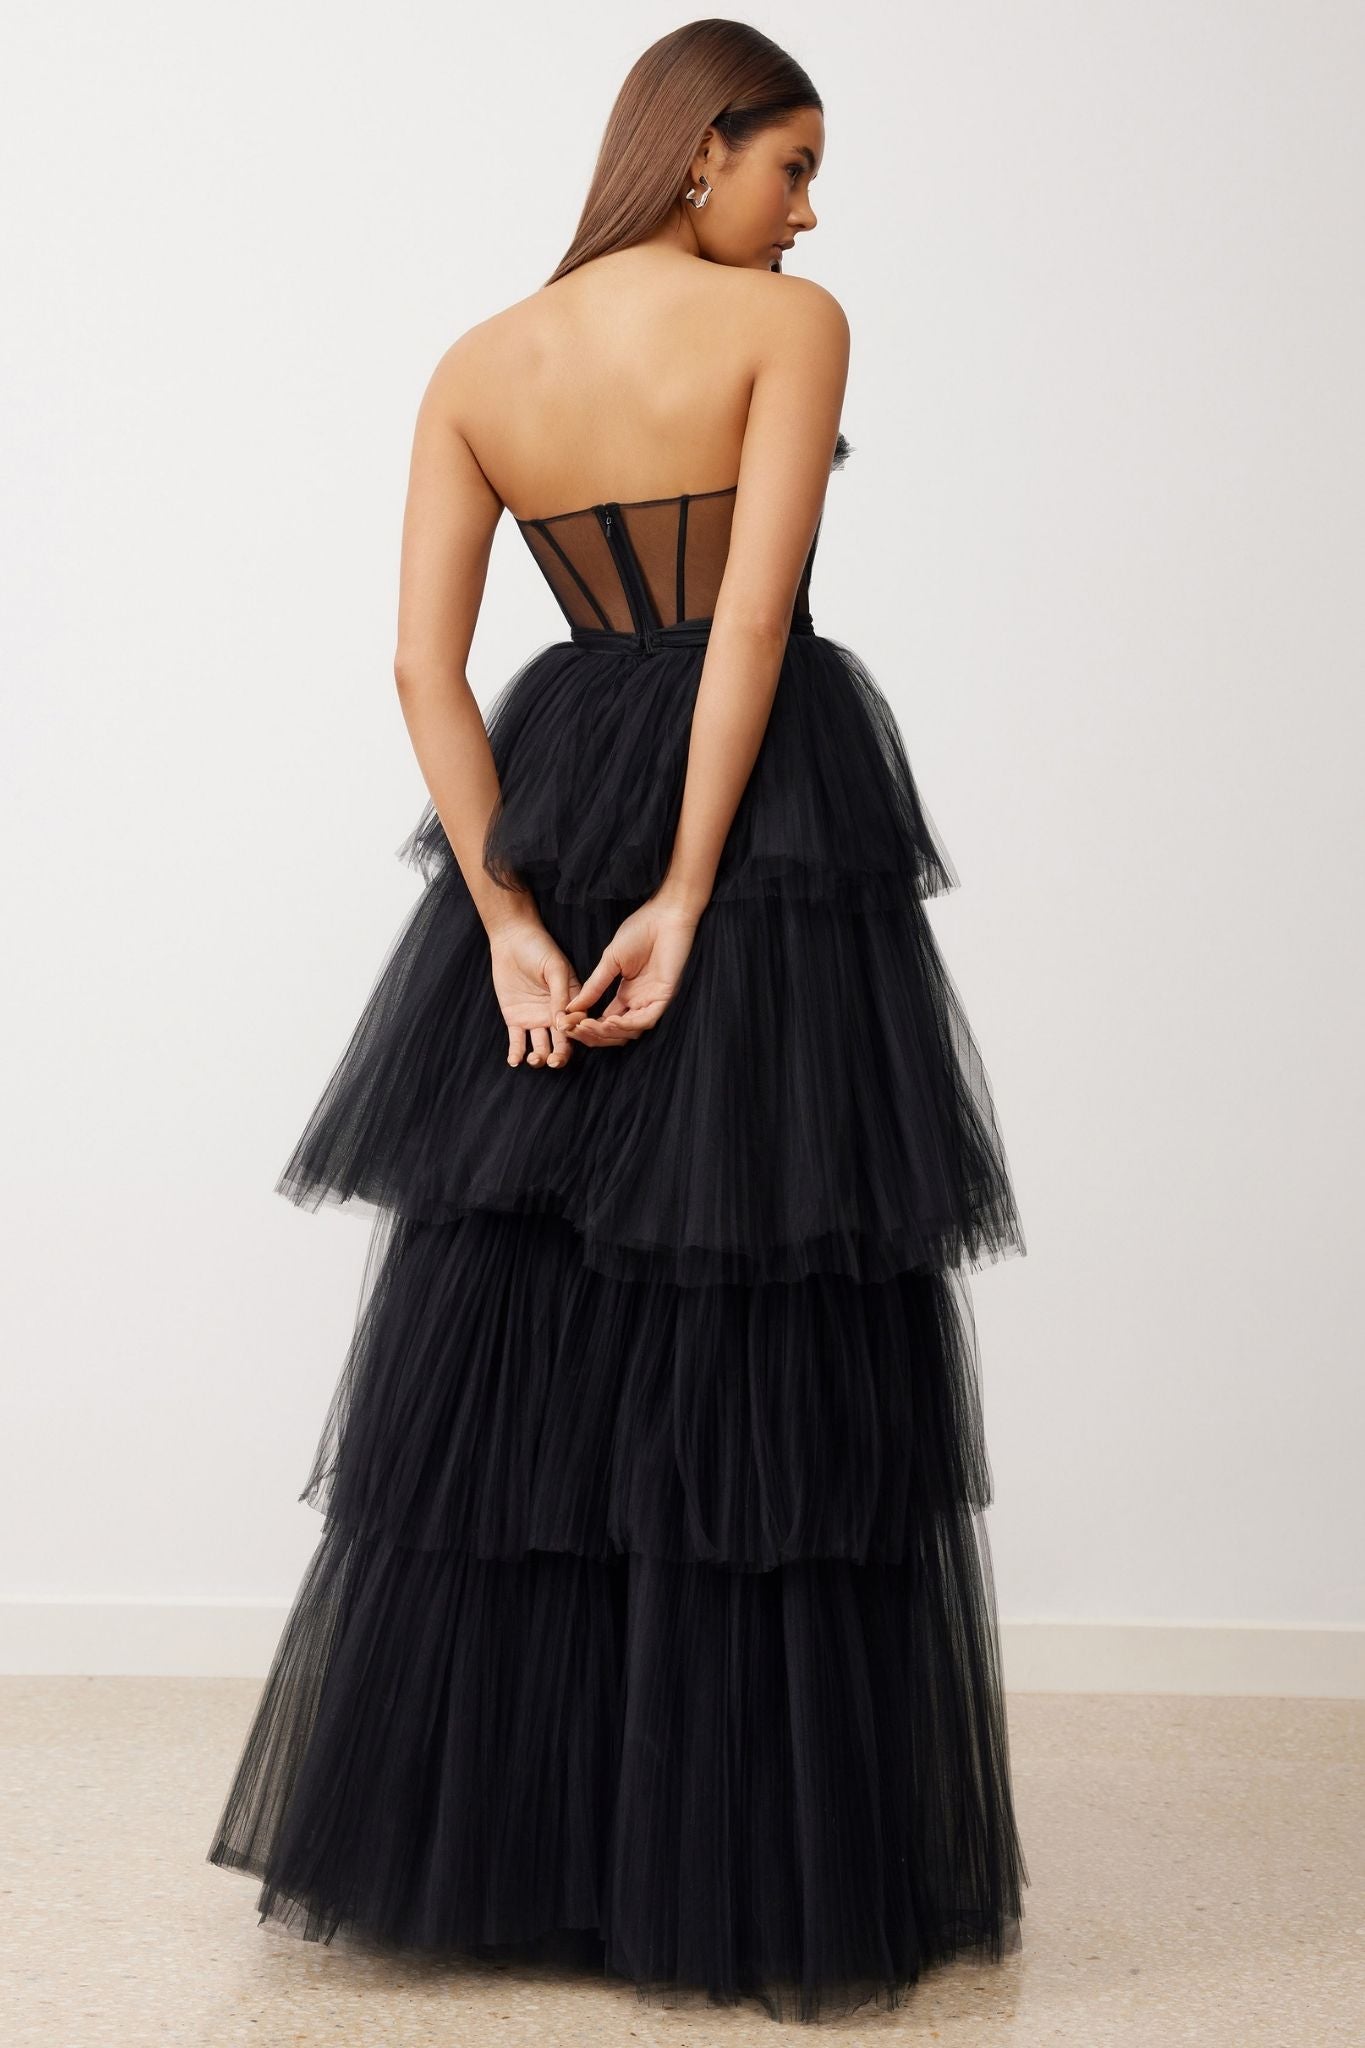 La Mer Dress in Black by Lexi - RENTAL – The Fitzroy